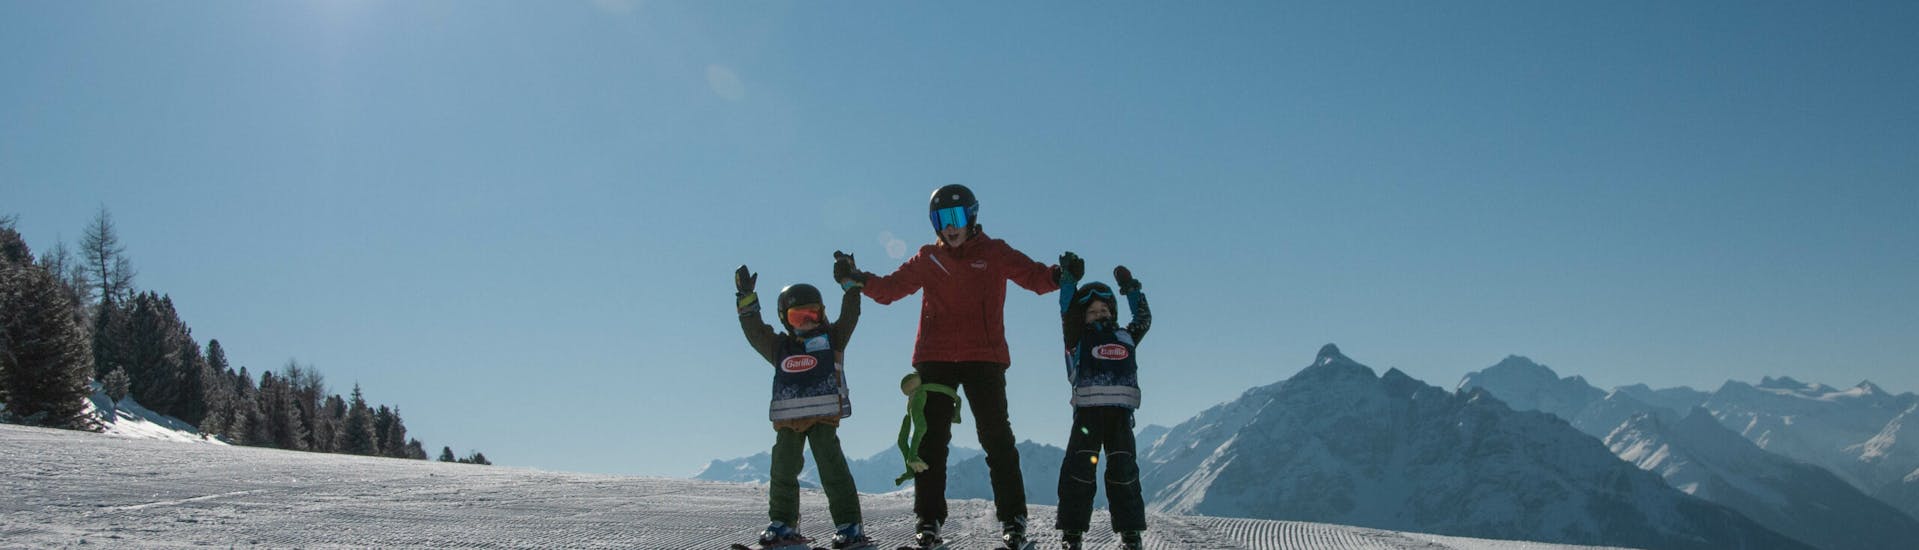 Clases particulares de esquí para familias de nivel avanzado con Ski- & Snowboardschule Innsbruck.